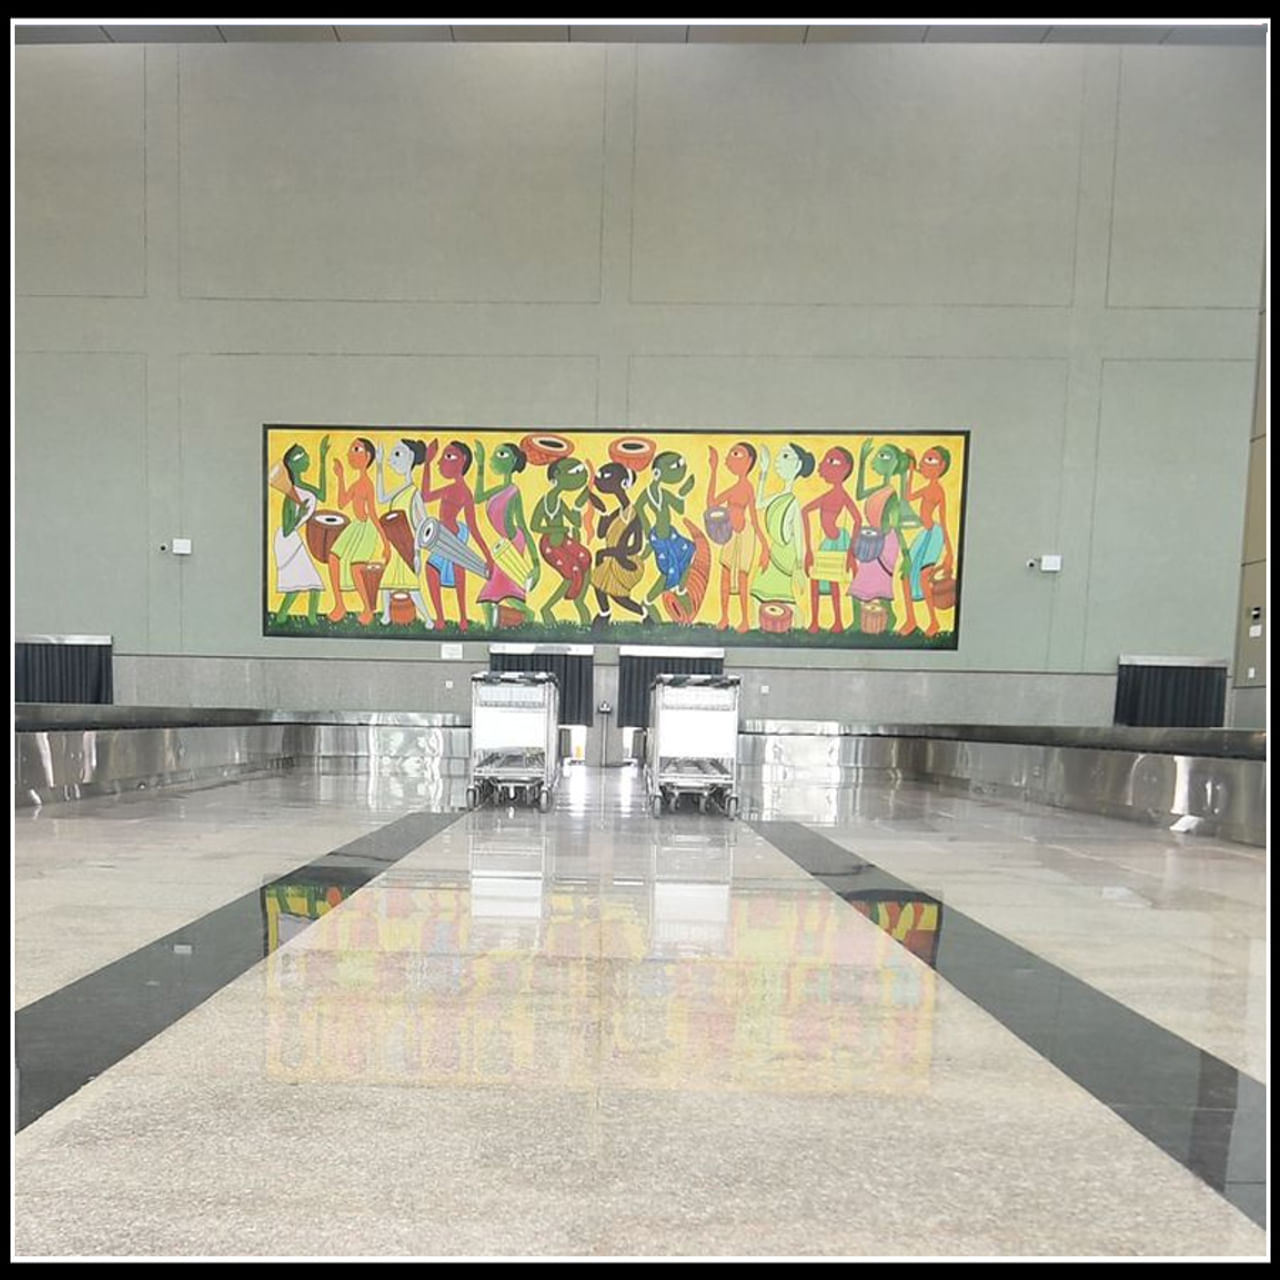 ఝార్ఖండ్‌లోని డియోగర్‌ అంతర్జాతీయ విమానాశ్రయాన్ని(Deoghar Airport) ప్రధానమంత్రి నరేంద్ర మోదీ(PM Modi) మంగళవారం ప్రారంభించనున్నారు. 